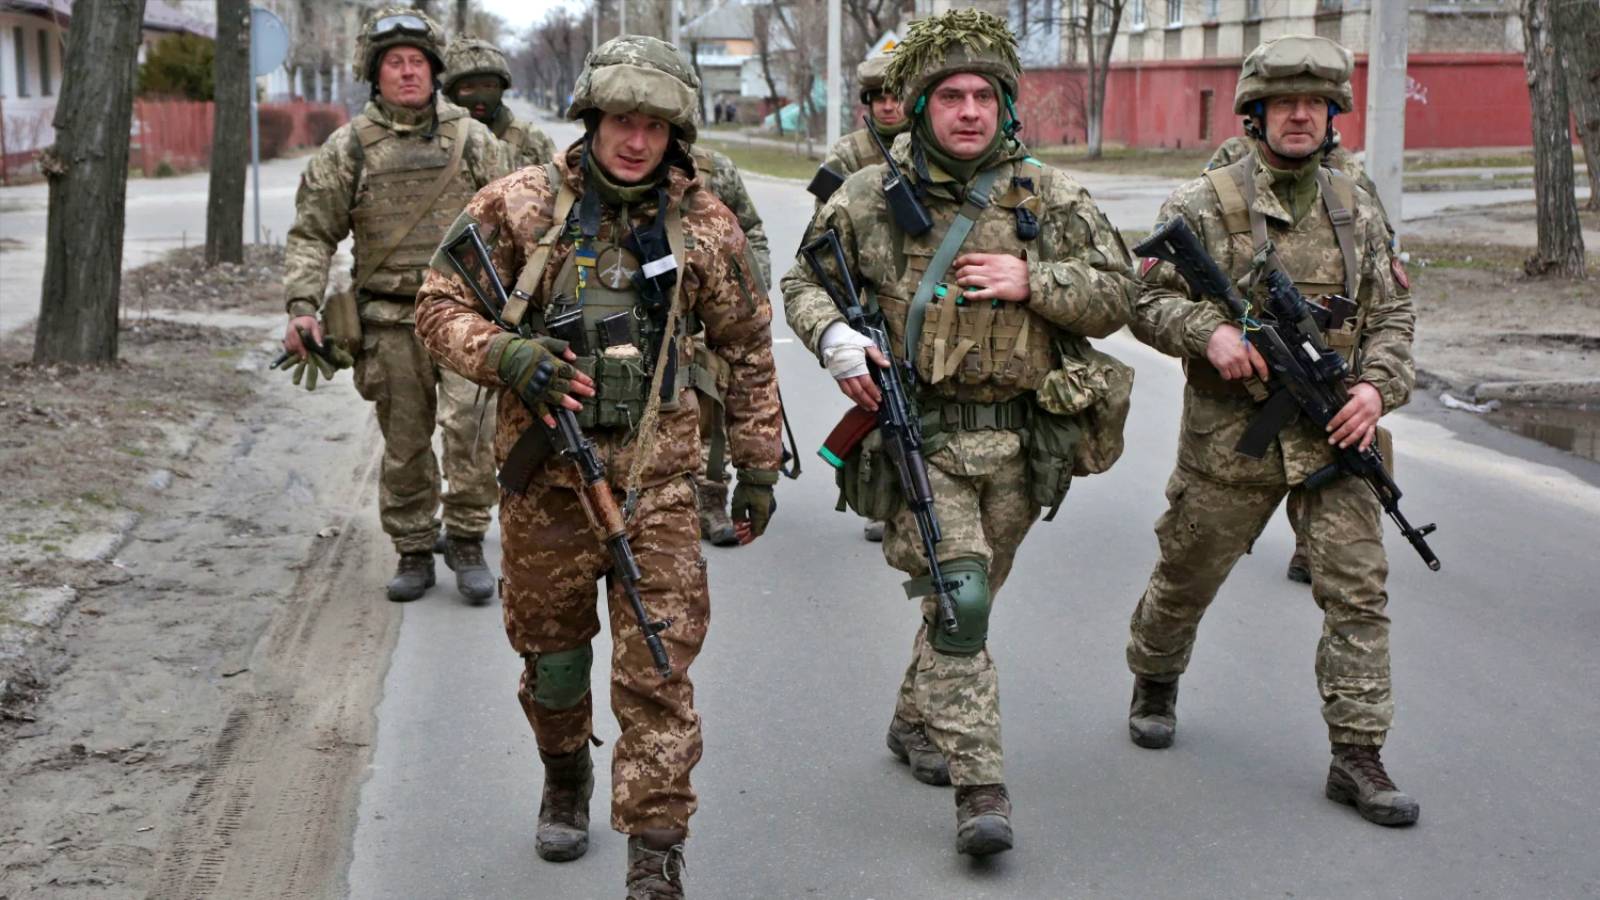 Soldații ruși trimiși să lupte în Ucraina ar fi suferit degerături din cauza lipsei echipamentului adecvat